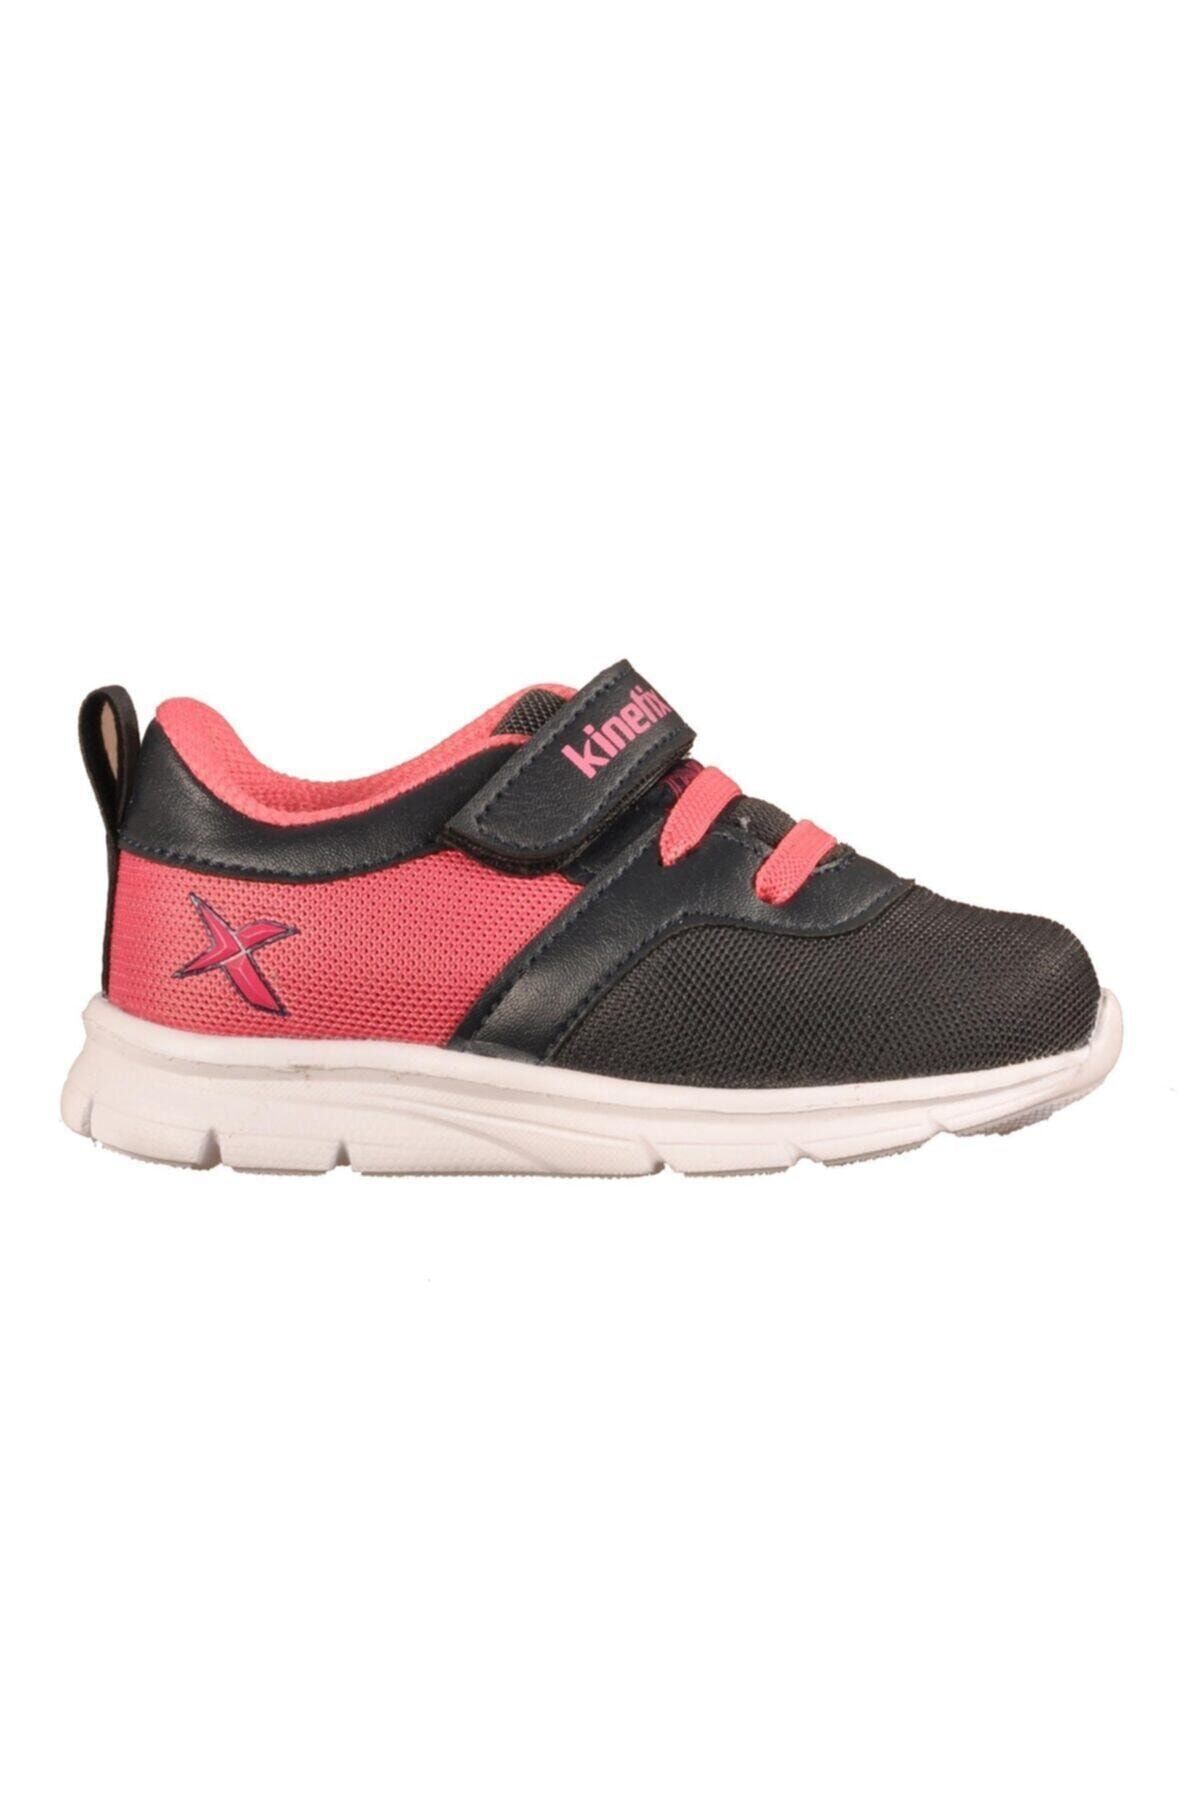 Kinetix ANKA Lacivert Pembe Kız Çocuk Yürüyüş Ayakkabısı 100303025